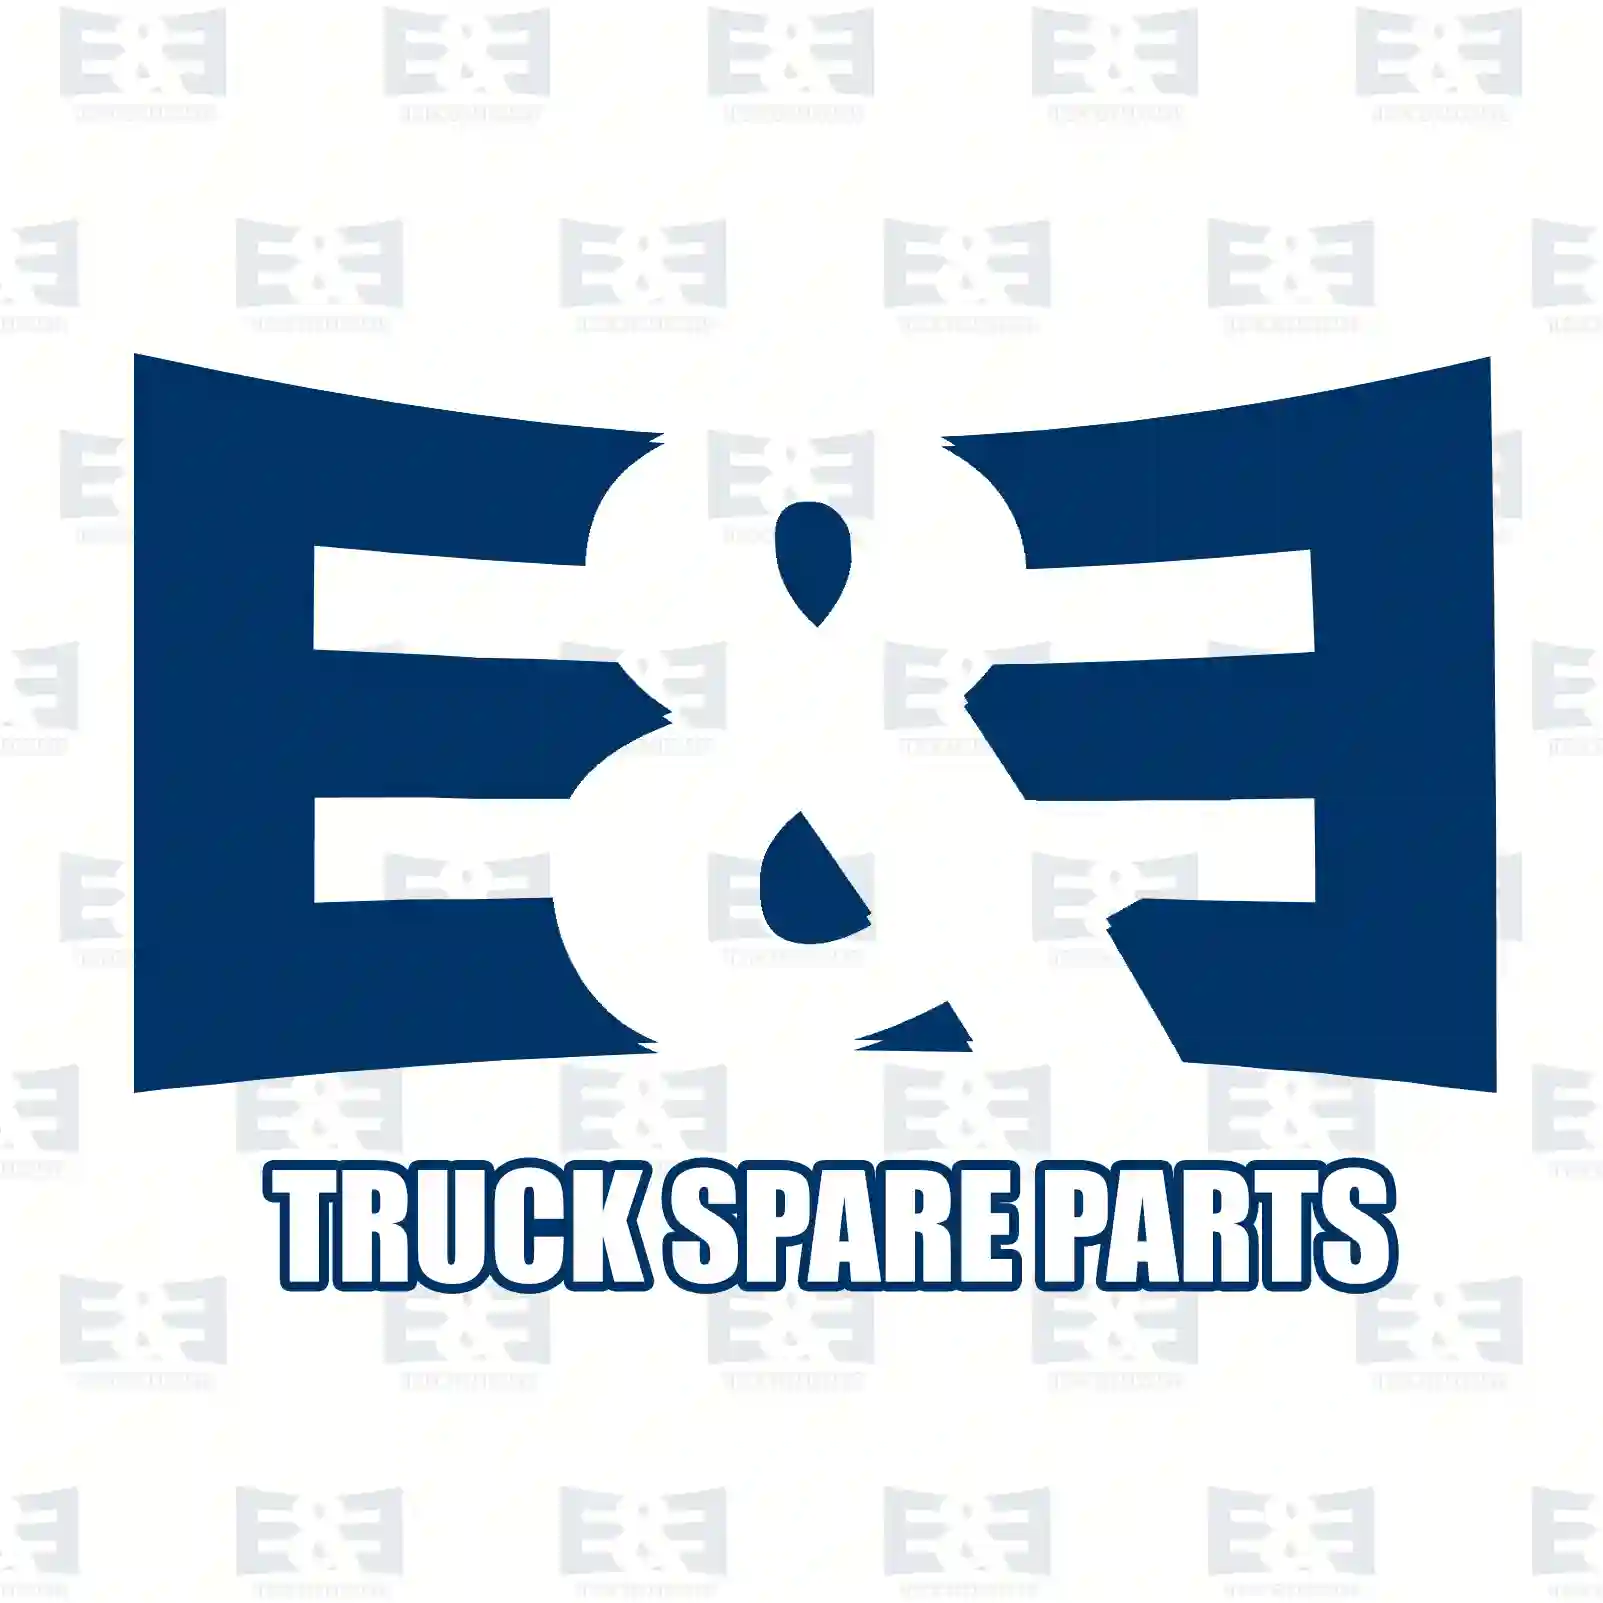 Spider pinion, 2E2279532, 1408143, 2170680, 2170681 ||  2E2279532 E&E Truck Spare Parts | Truck Spare Parts, Auotomotive Spare Parts Spider pinion, 2E2279532, 1408143, 2170680, 2170681 ||  2E2279532 E&E Truck Spare Parts | Truck Spare Parts, Auotomotive Spare Parts